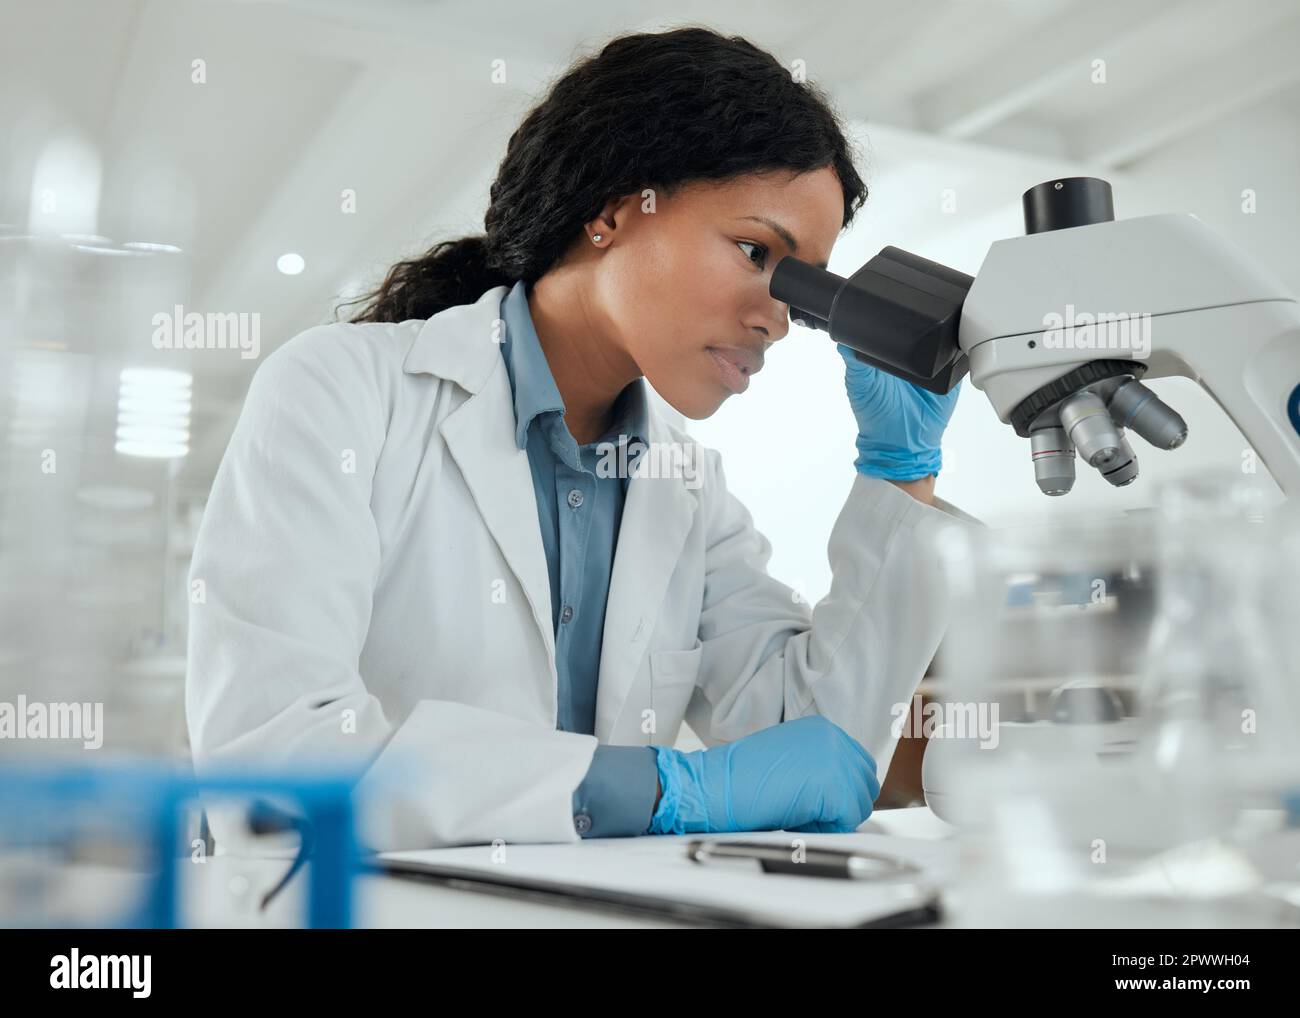 Lavorare senza distrazioni. una giovane donna che usa un microscopio in un laboratorio scientifico Foto Stock